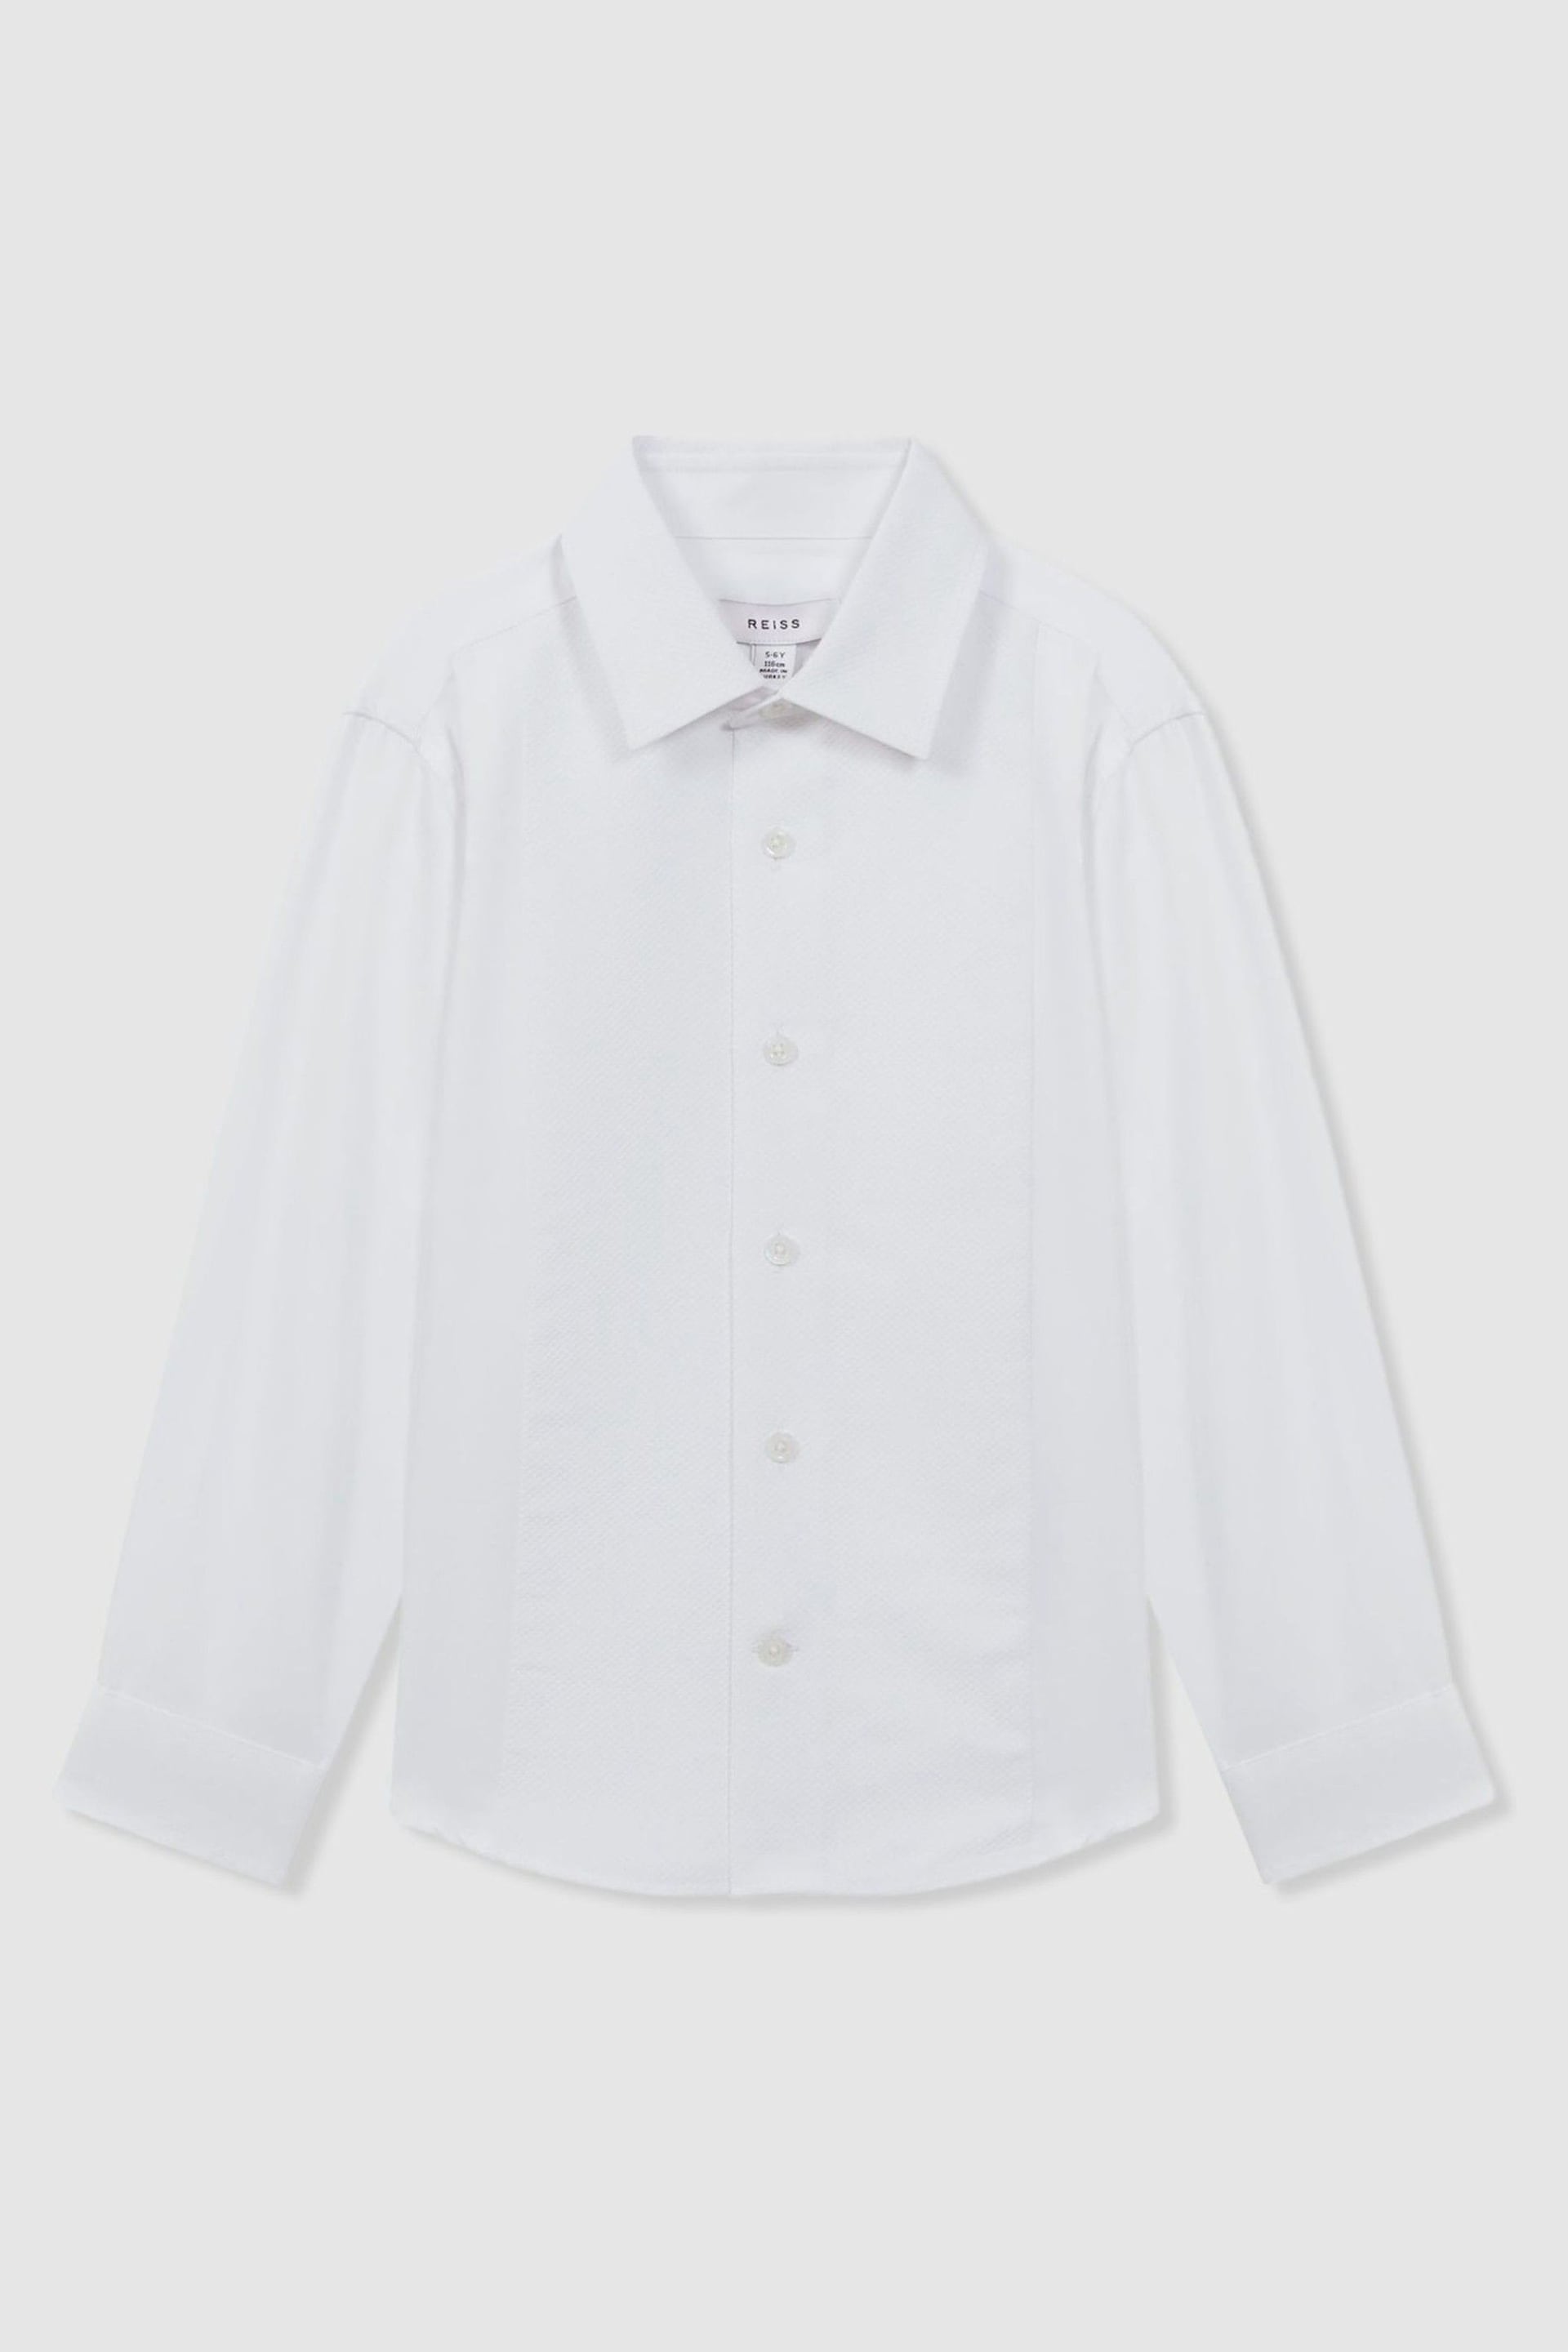 Reiss White Marcel Senior Slim Fit Dinner Shirt - Image 2 of 5